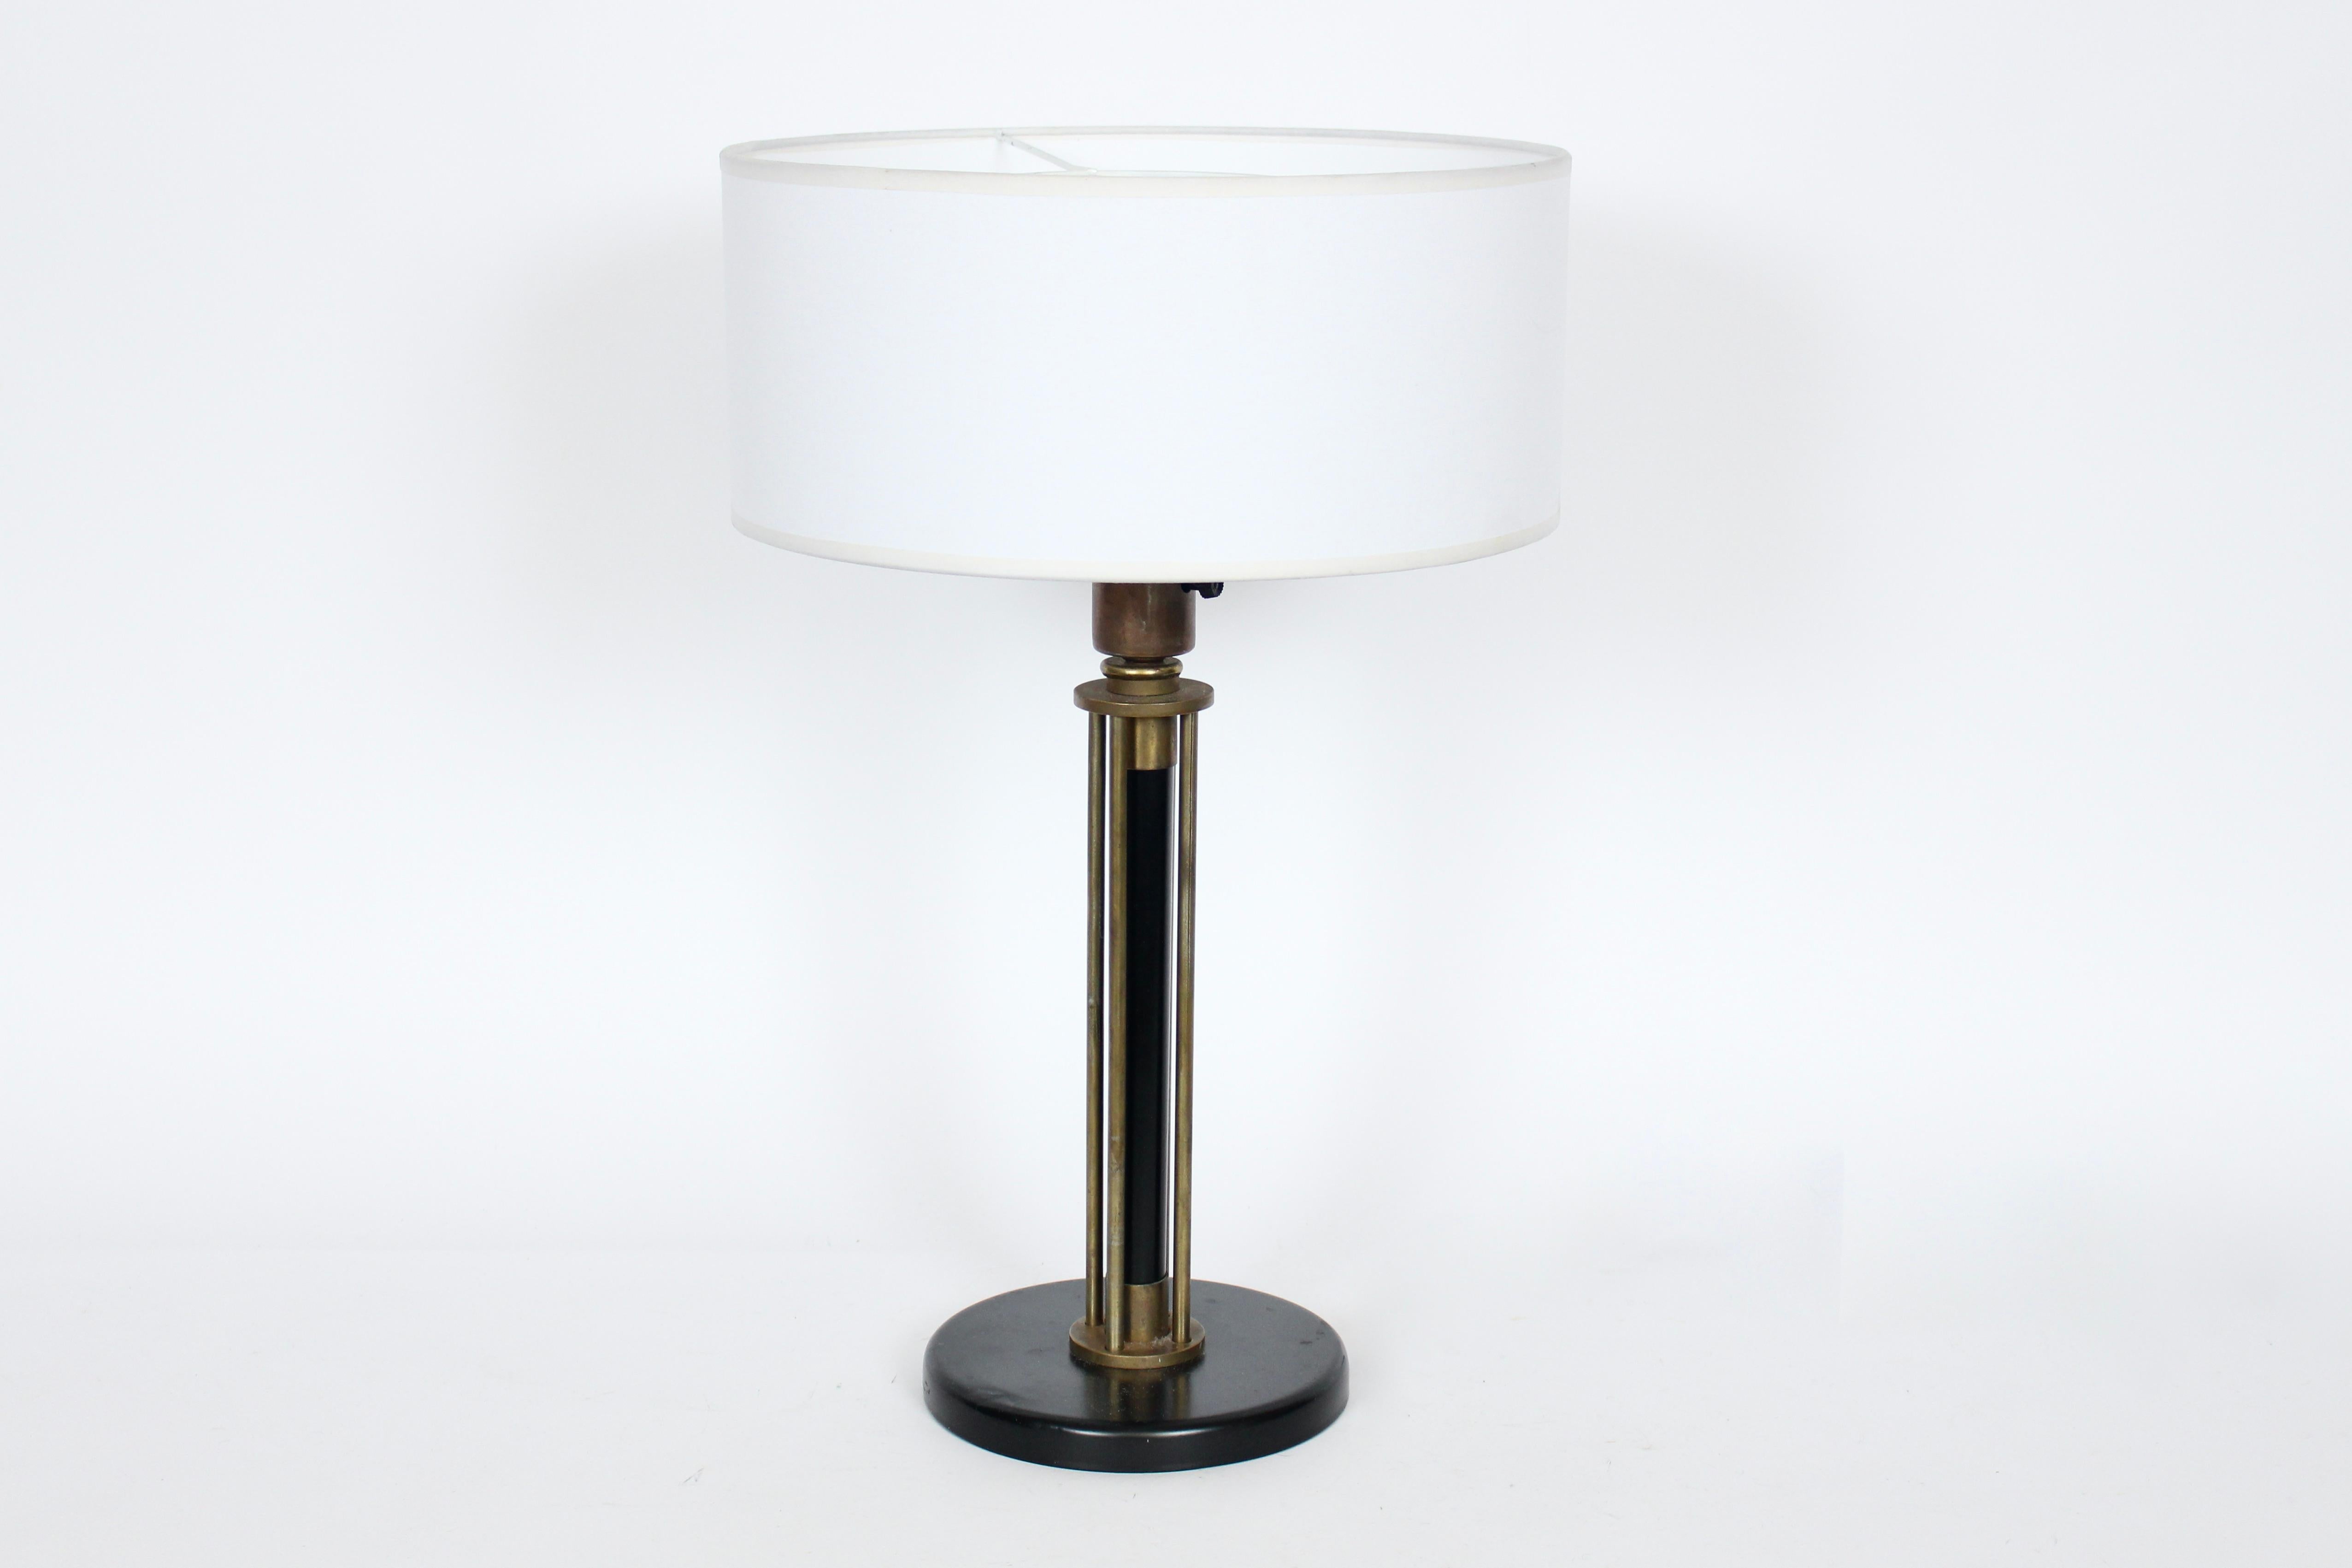 Walter Von Nessen Machine Age Black Enamel & Brass Table Lamp, 1940's For Sale 10